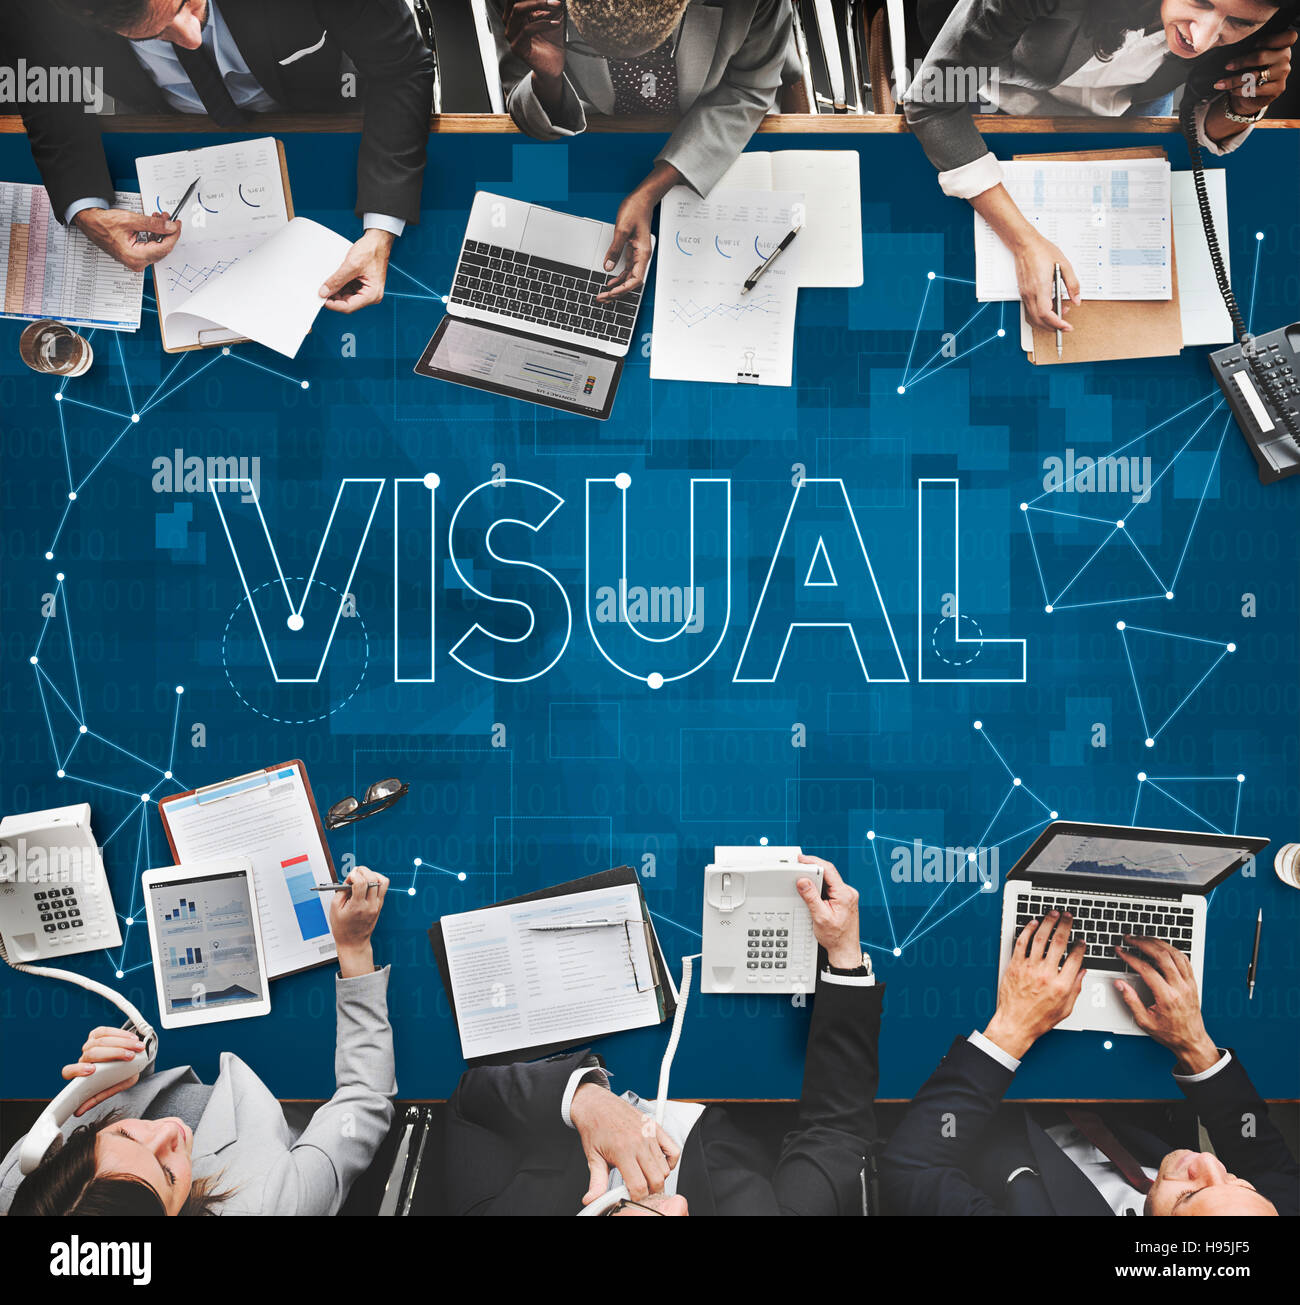 La pensée créative l'innovation visuelle Concept Visibilité Banque D'Images